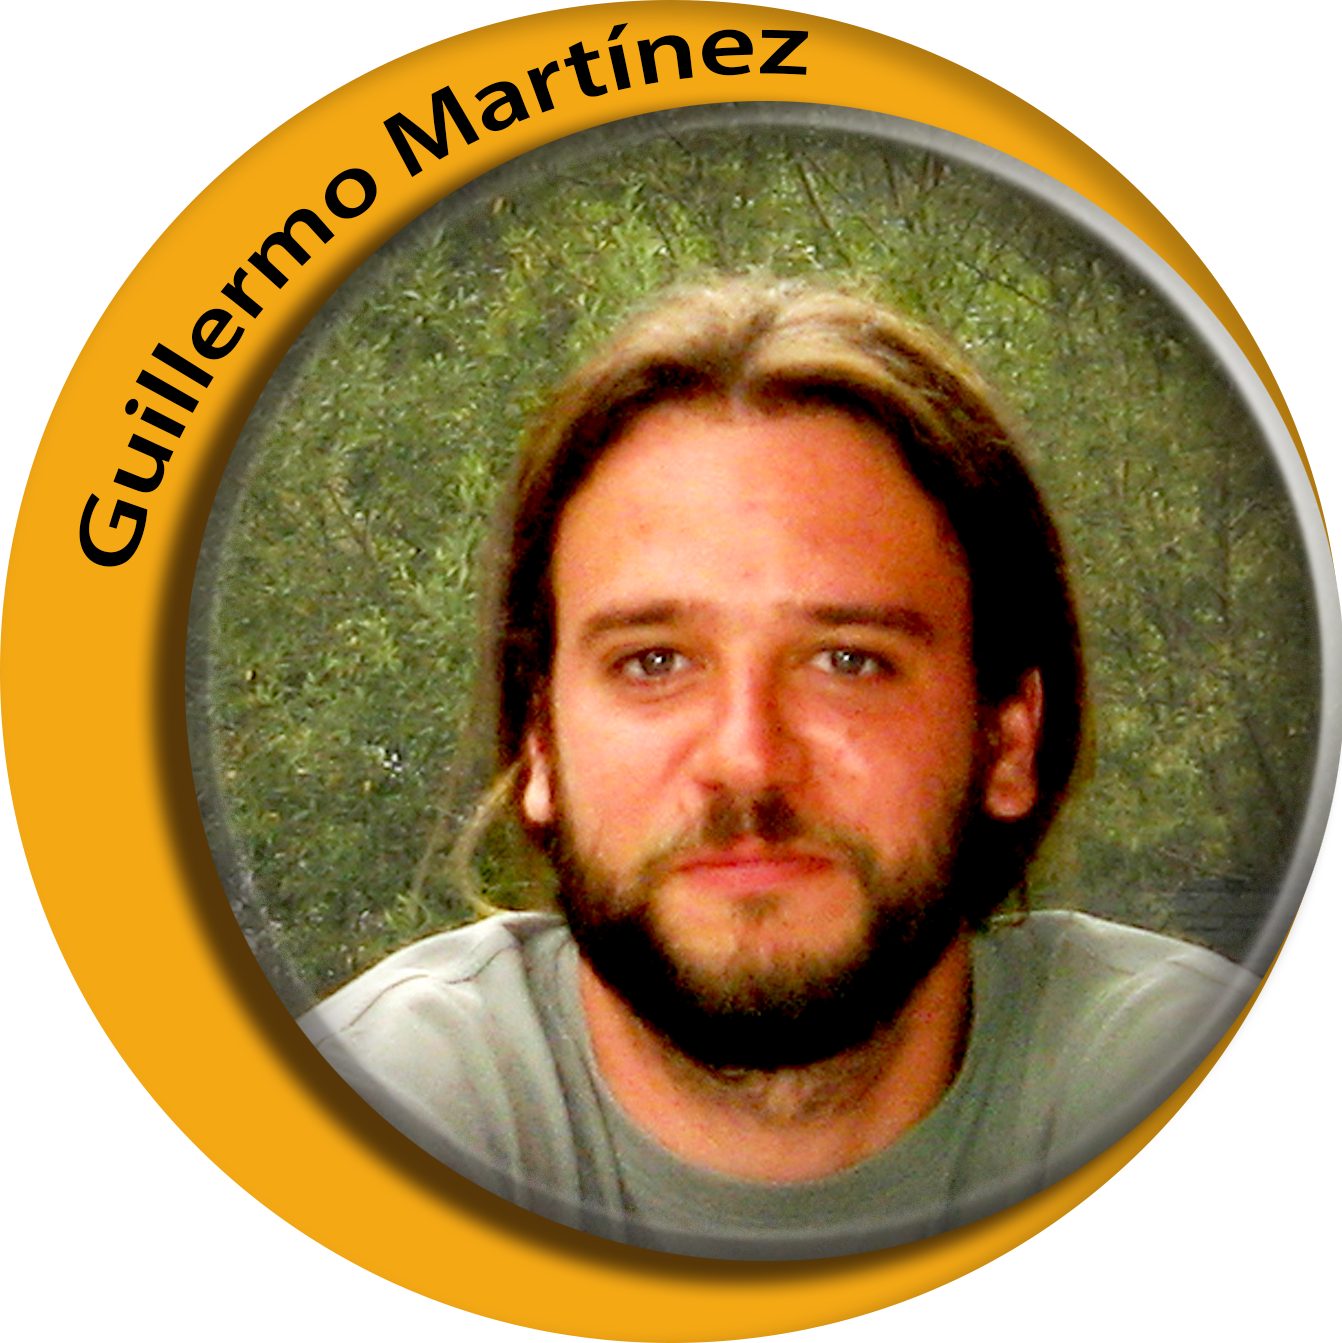 Guillermo Martinez